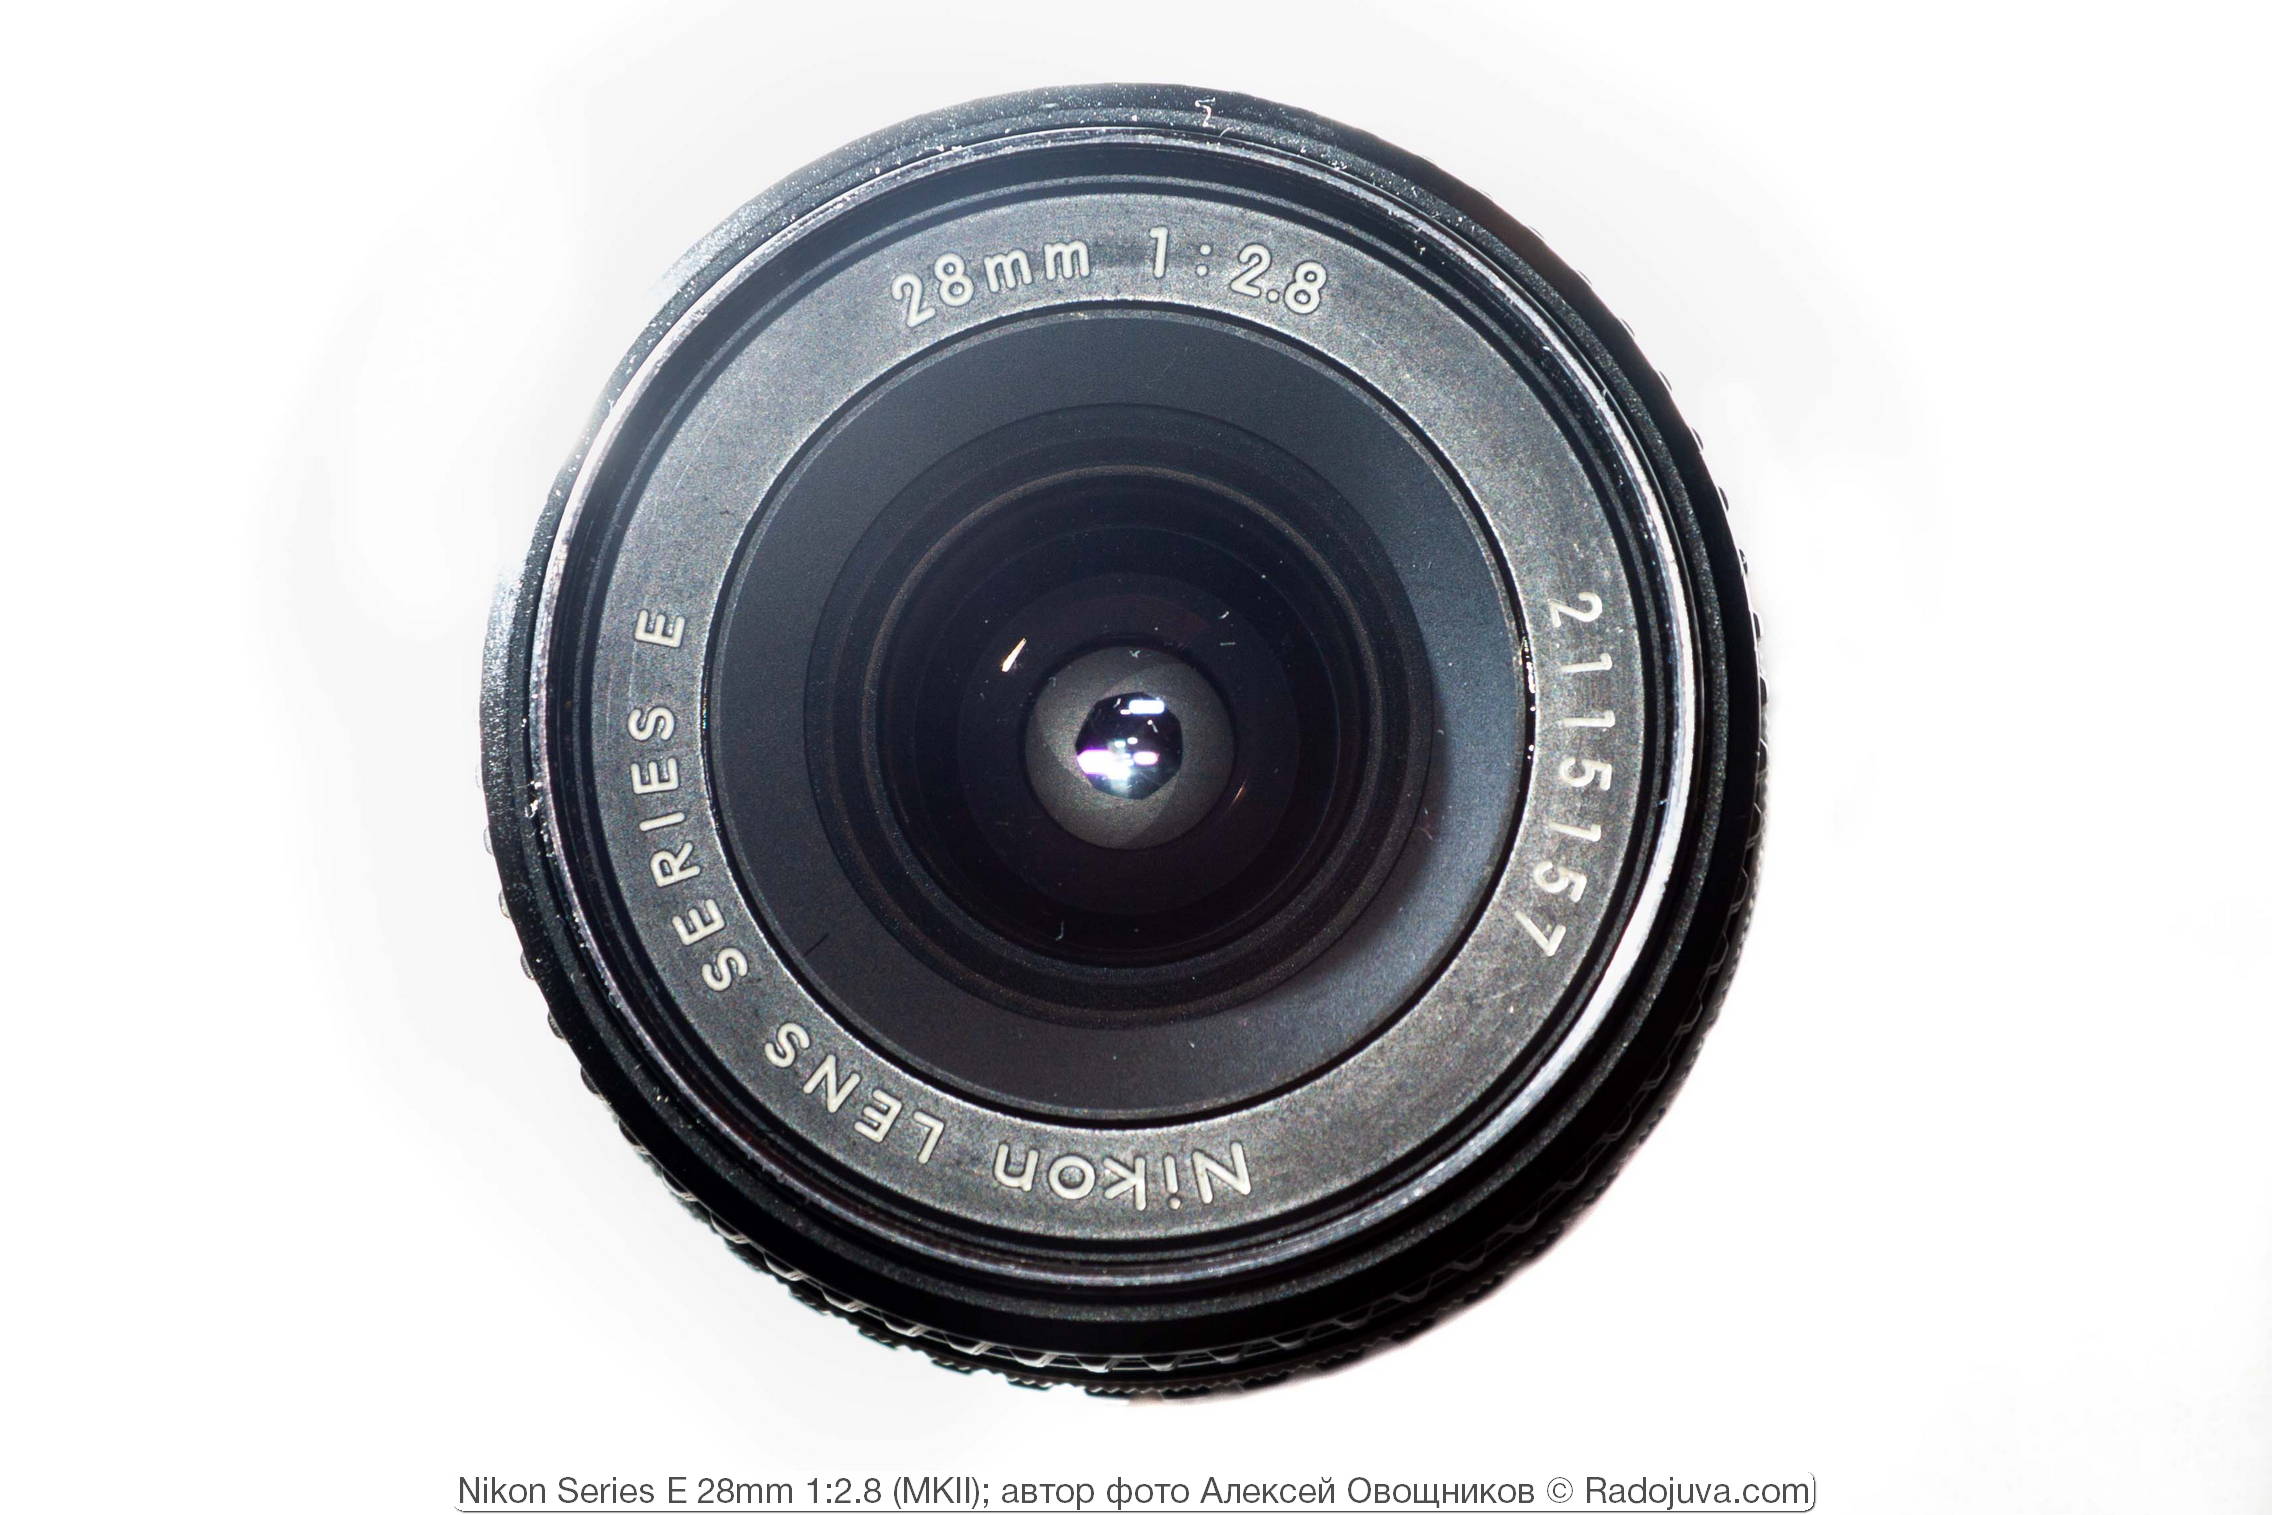 Nikon Series E 28mm 1:2.8 MKII